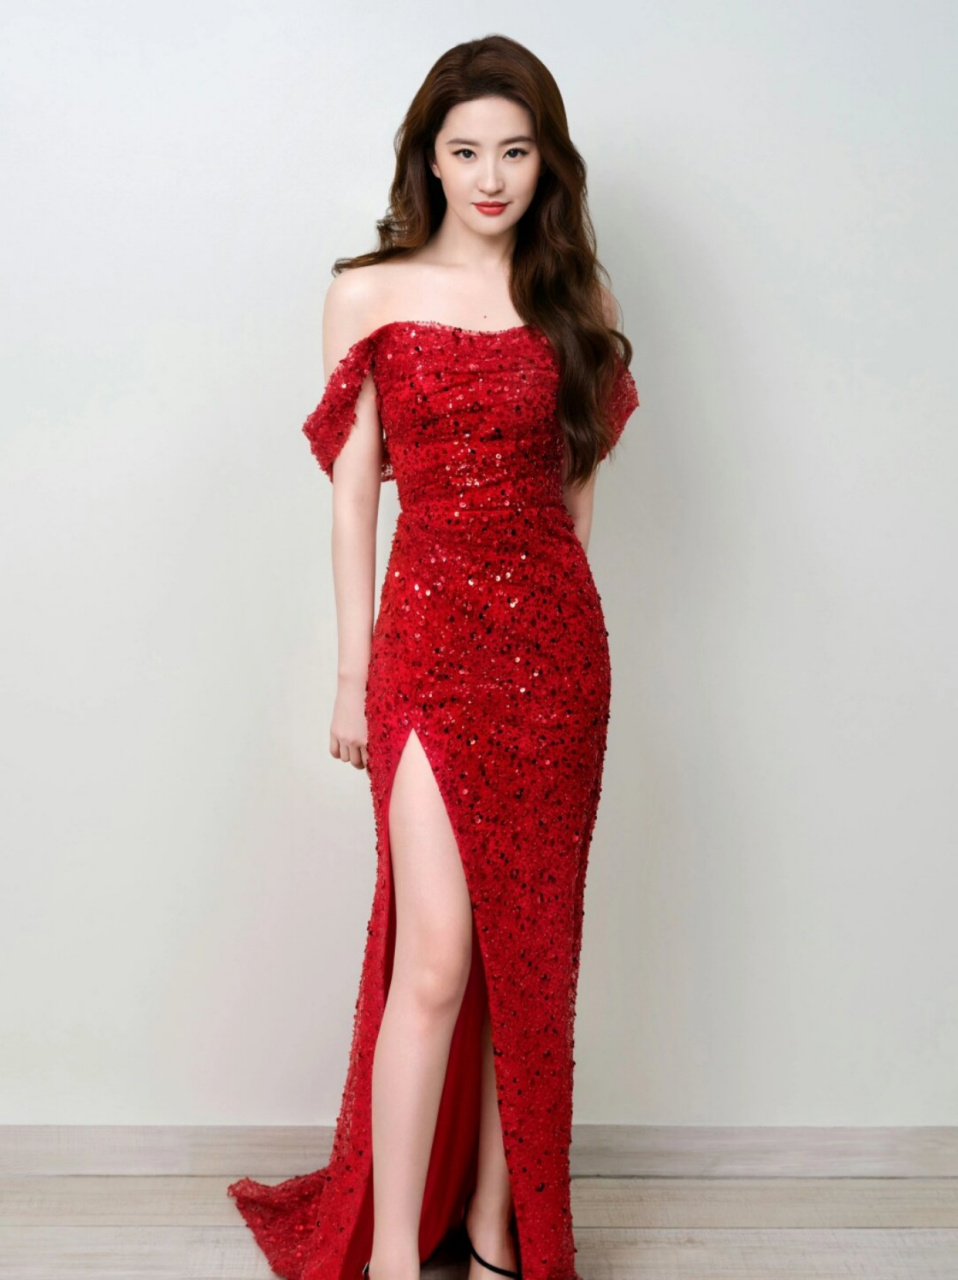 刘亦菲开叉抹胸红裙造型,又美出新高度了~  刘亦菲在最新一组工作室美